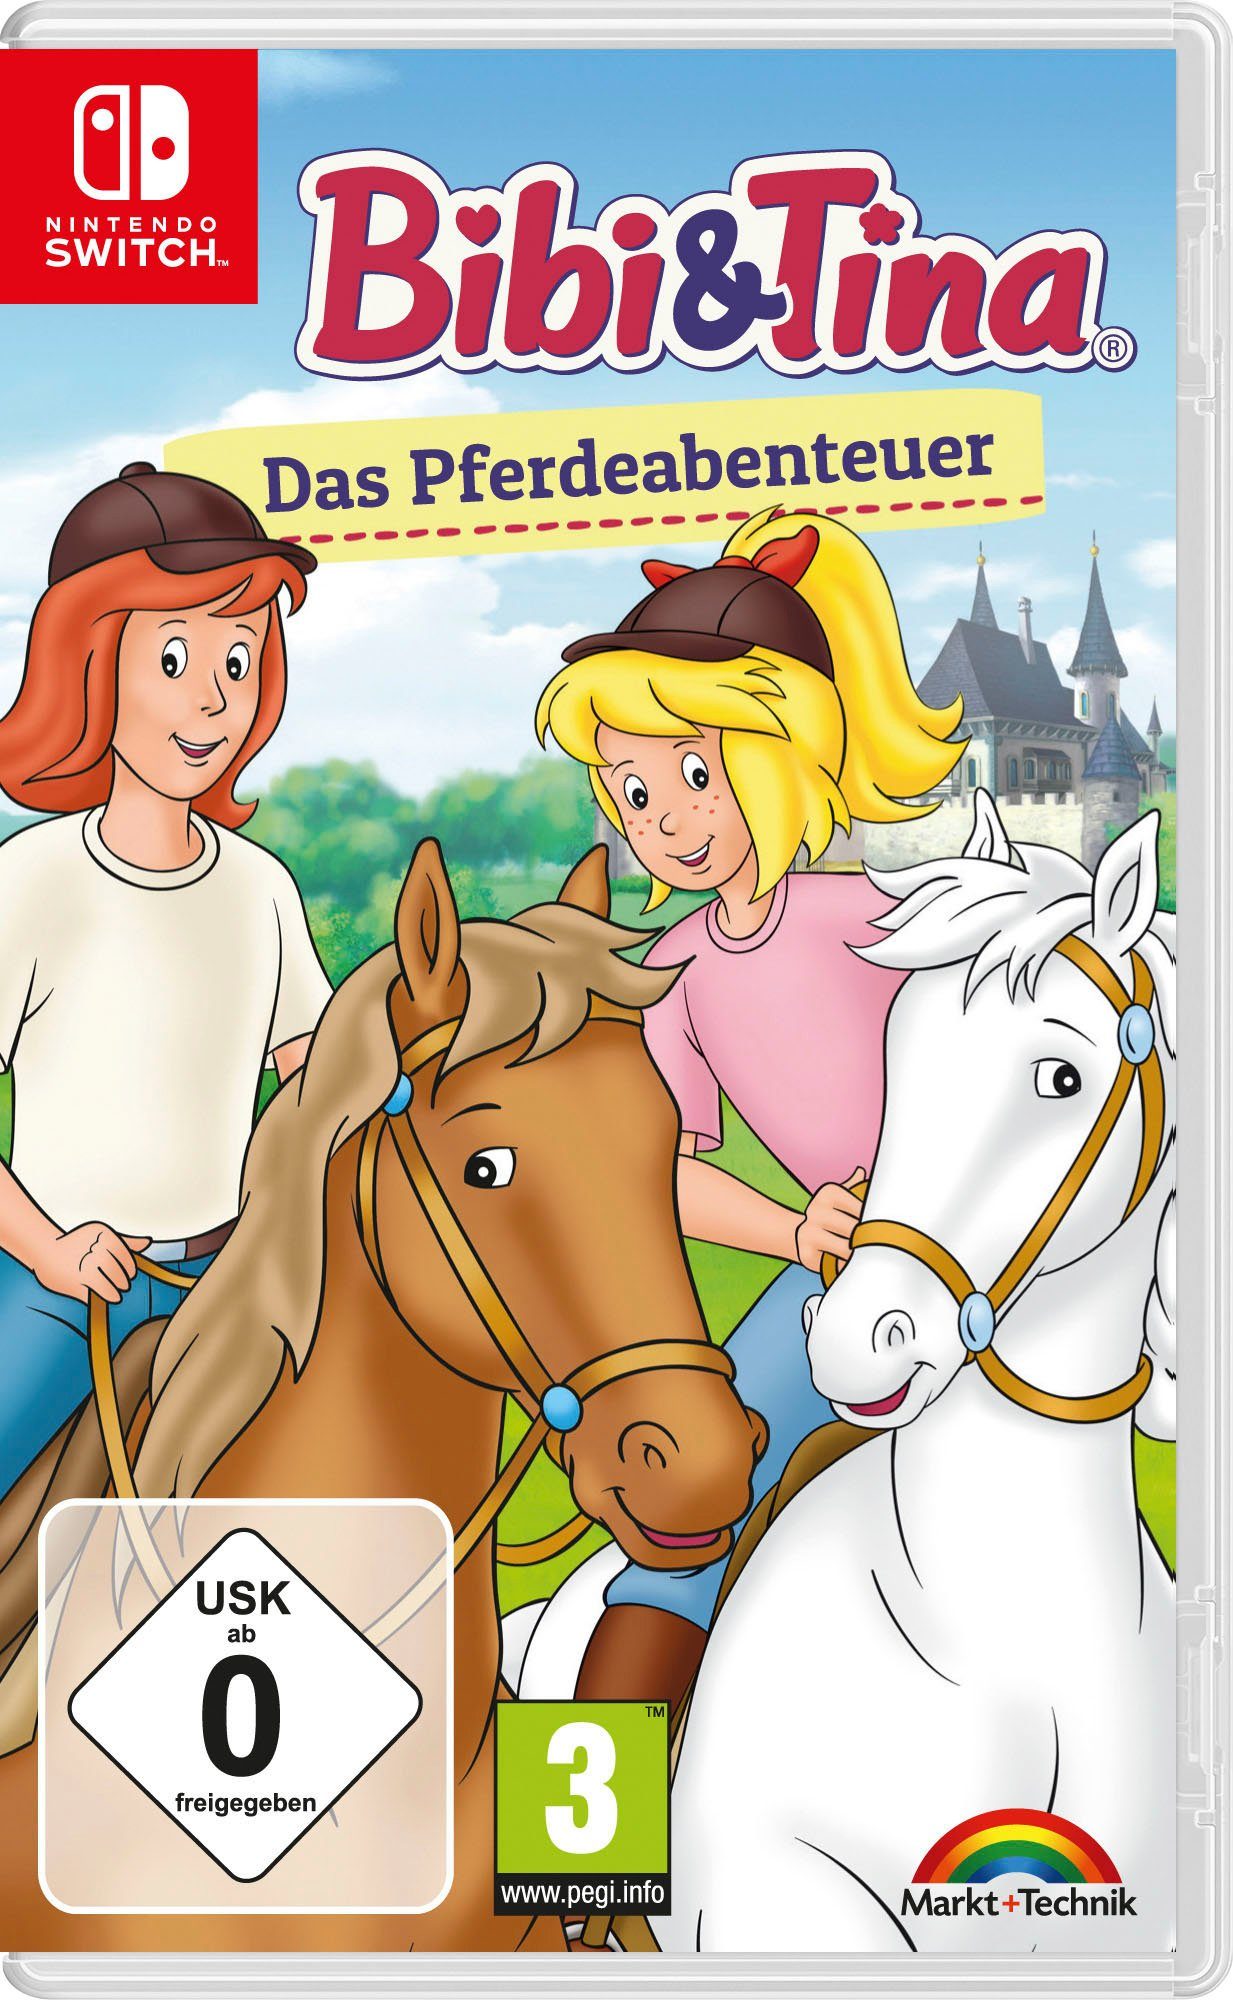 Bibi & Tina: Das Pferdeabenteuer Nintendo Switch, Spiele vier tolle  Pferde-Minigames: Striegeln, Hufpflege, Füttern und Schmücken | Nintendo-Switch-Spiele